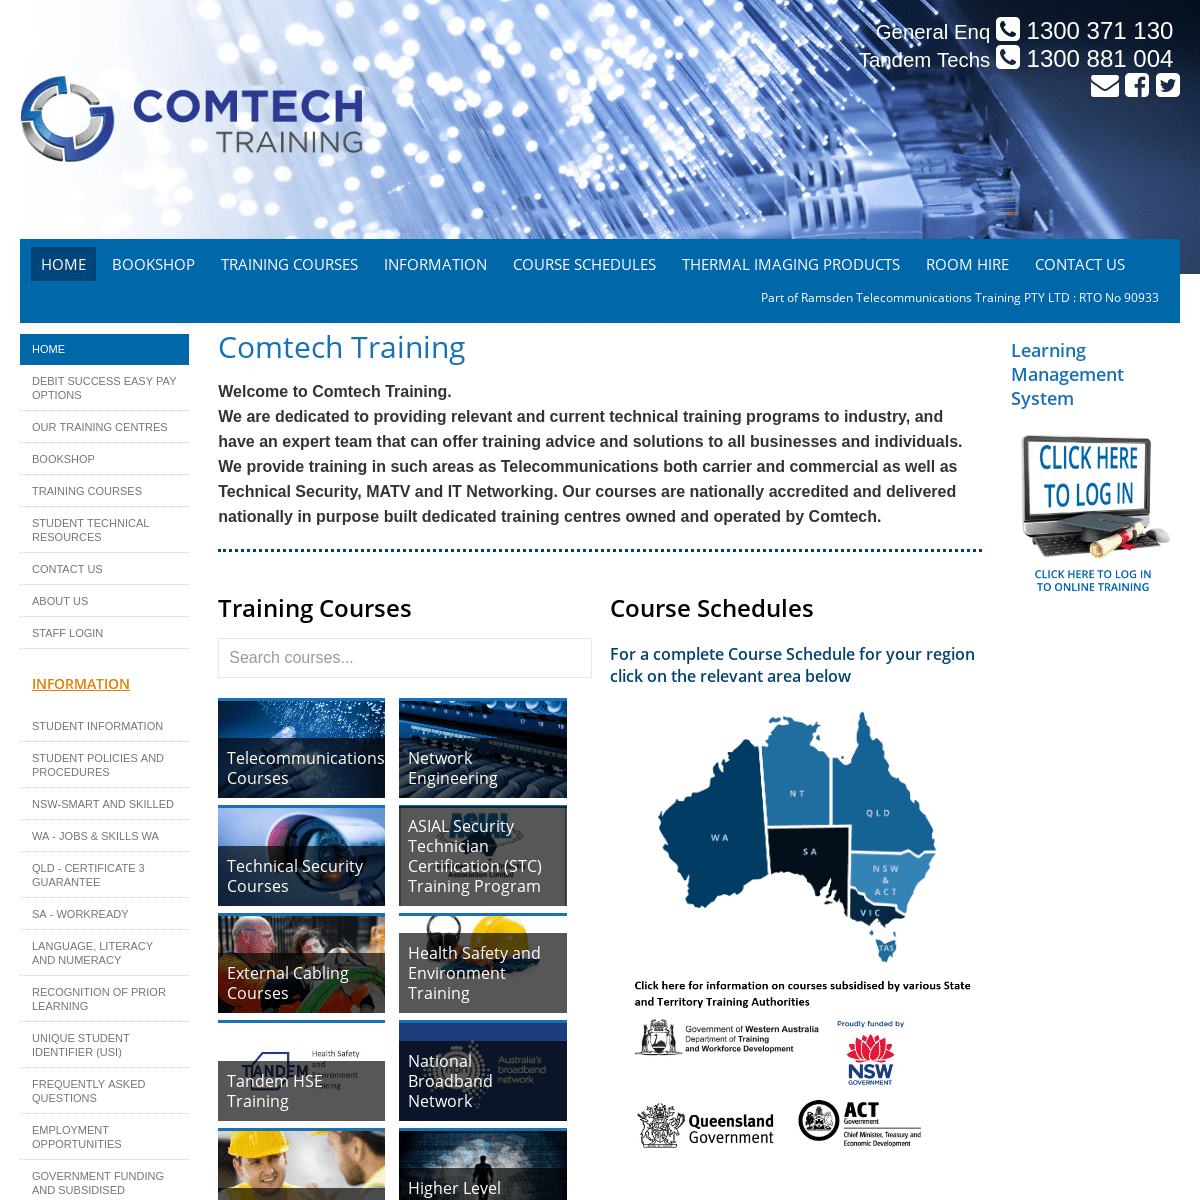 A complete backup of comtech.edu.au